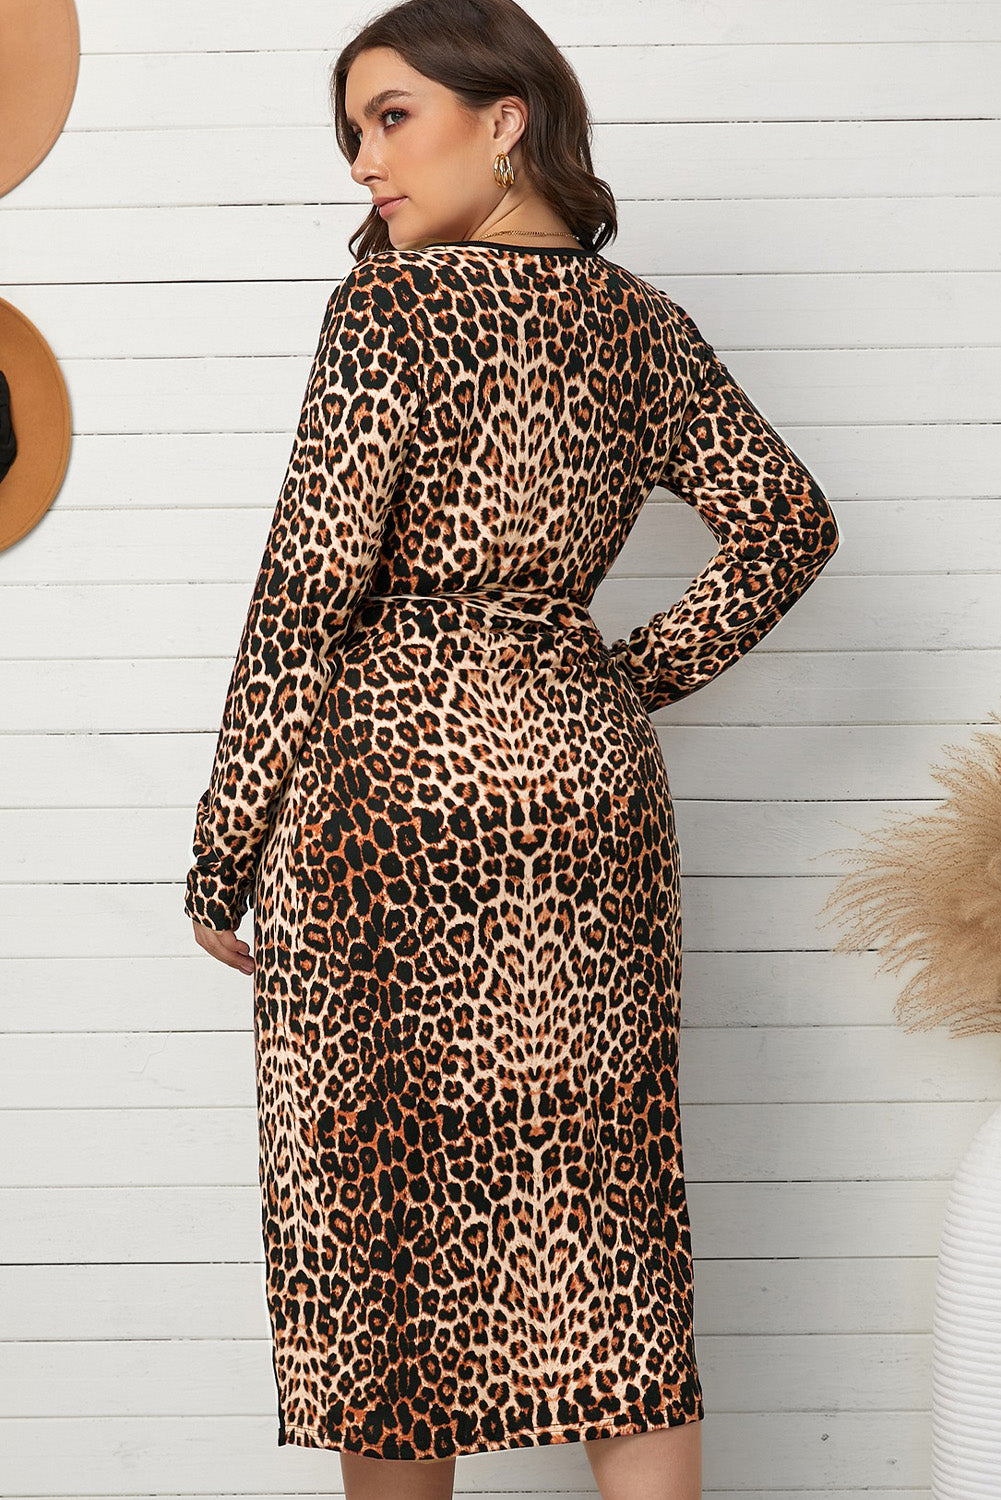 Aubrey Leopard Wrap V Neck Plus size Dress with A Slit - The Bohemian Closet